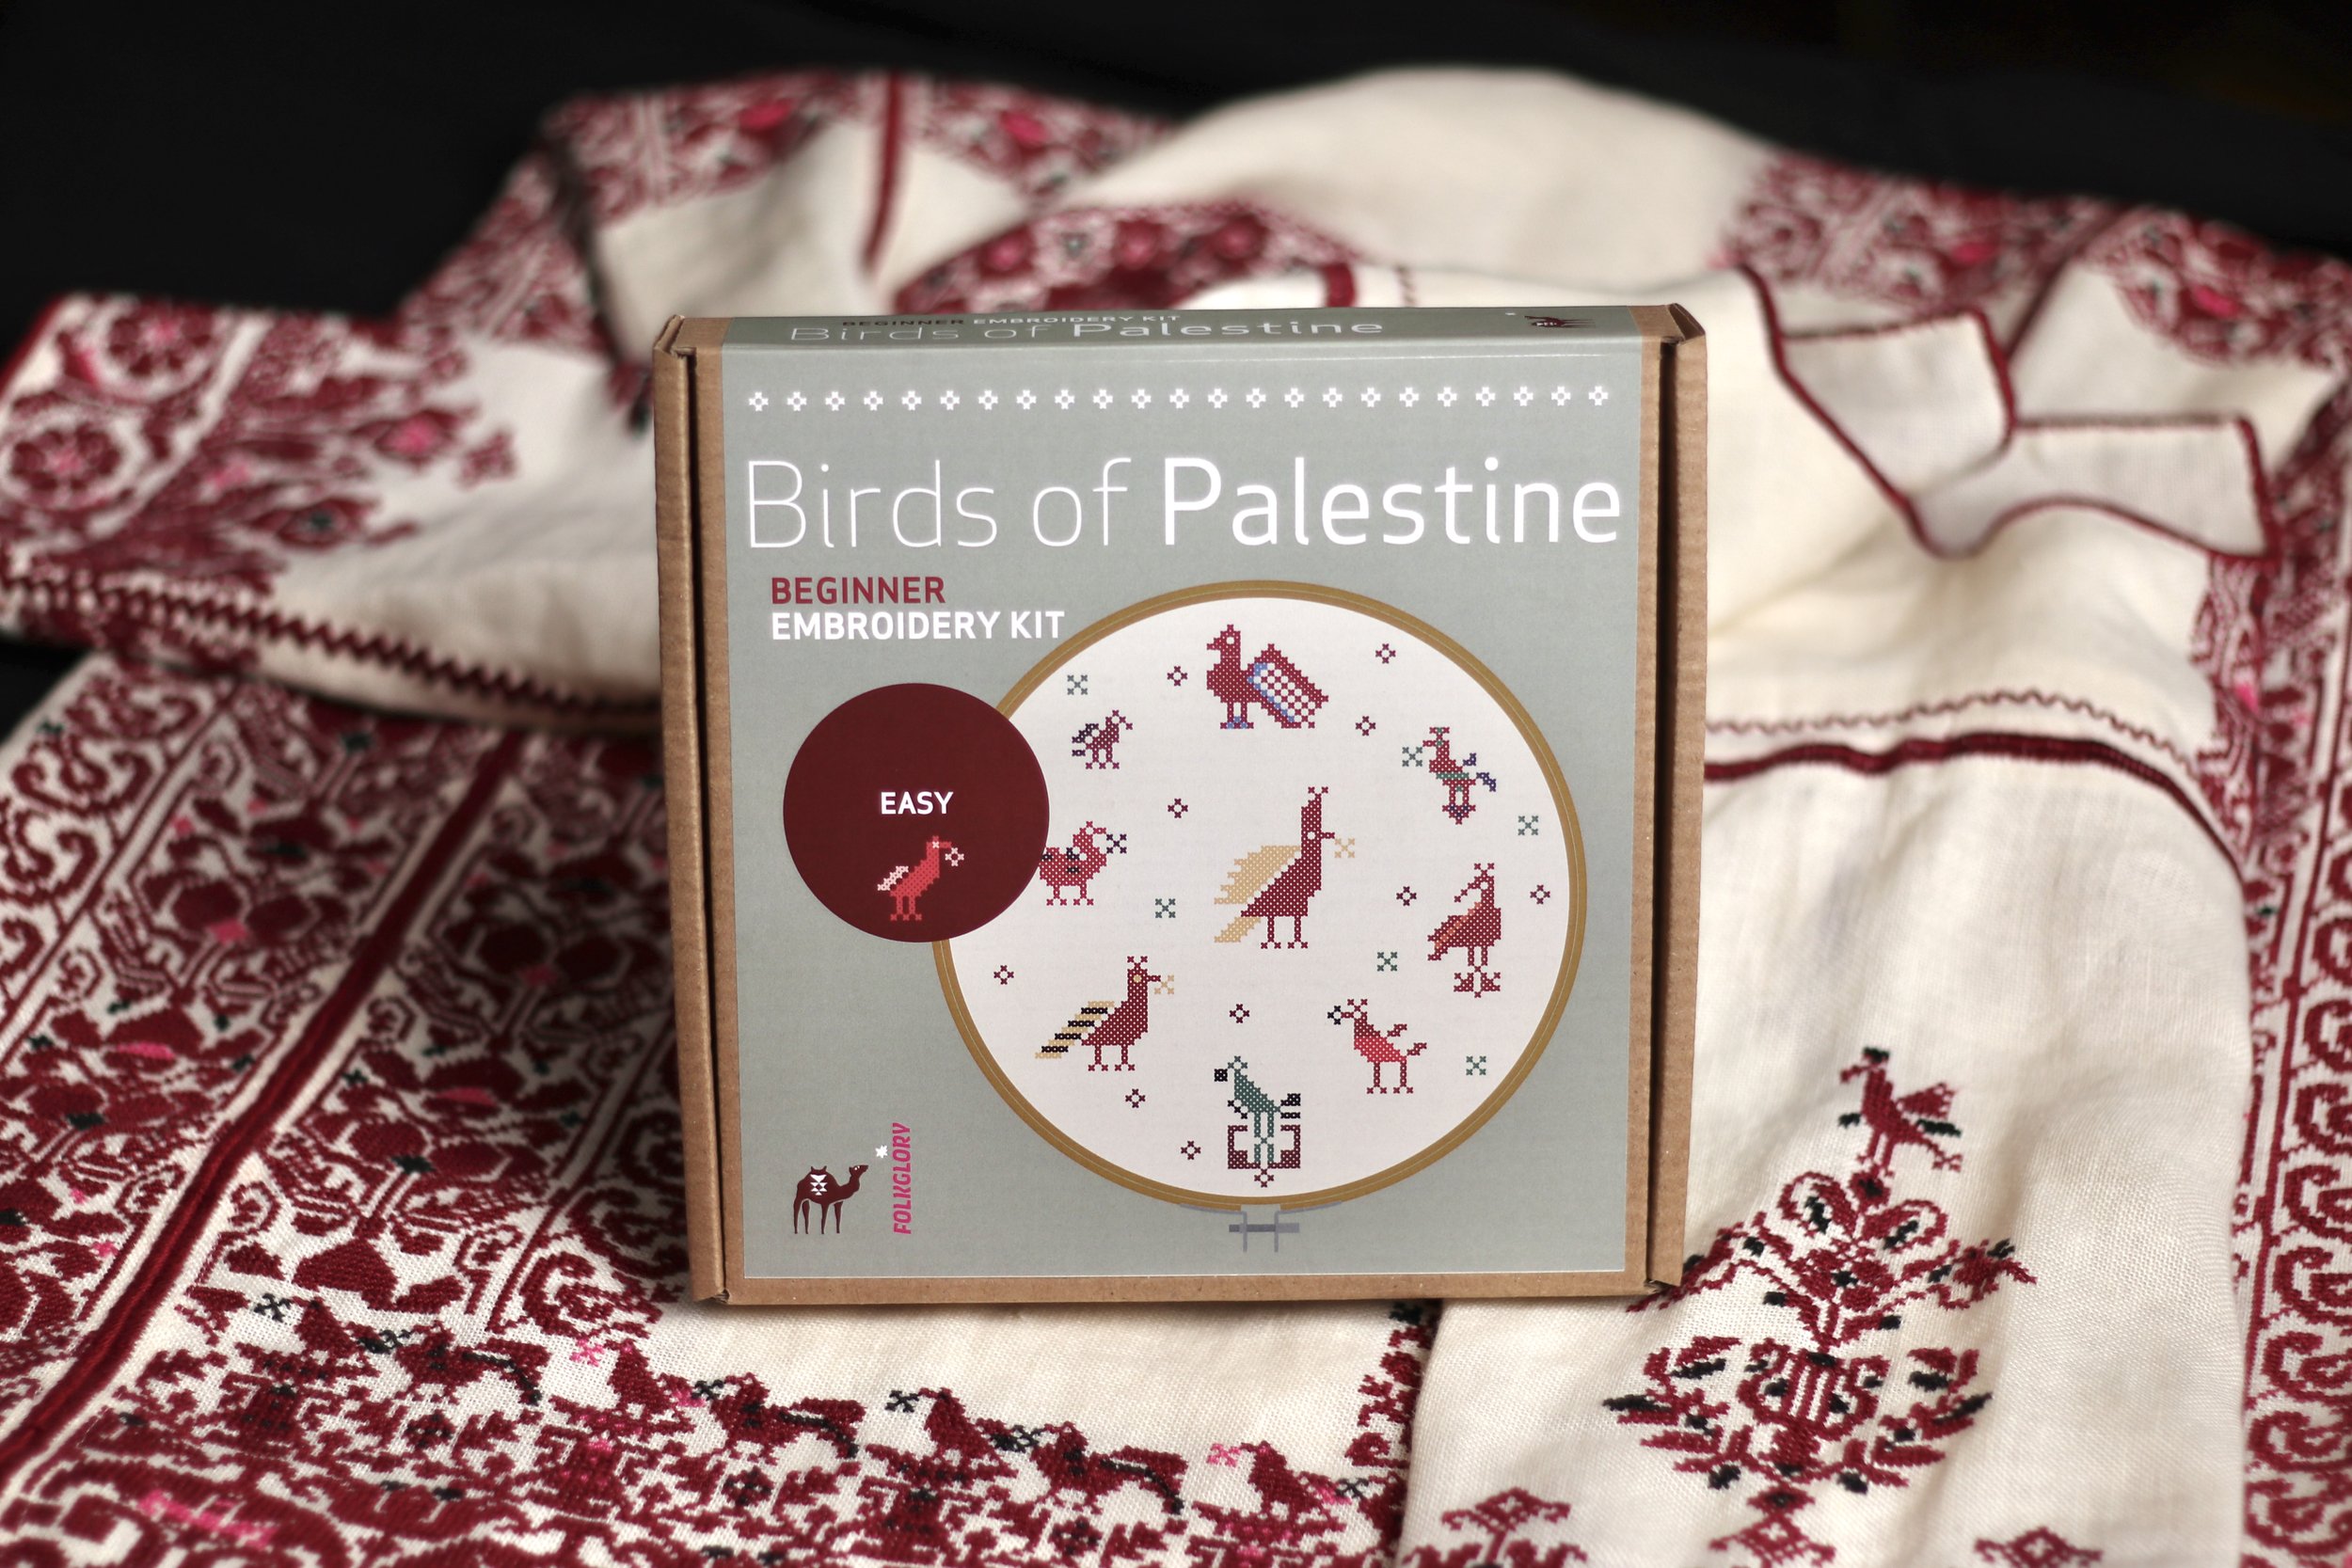 Folkglory Jordan: Huran Beginner Embroidery Kit – Arab American National  Museum